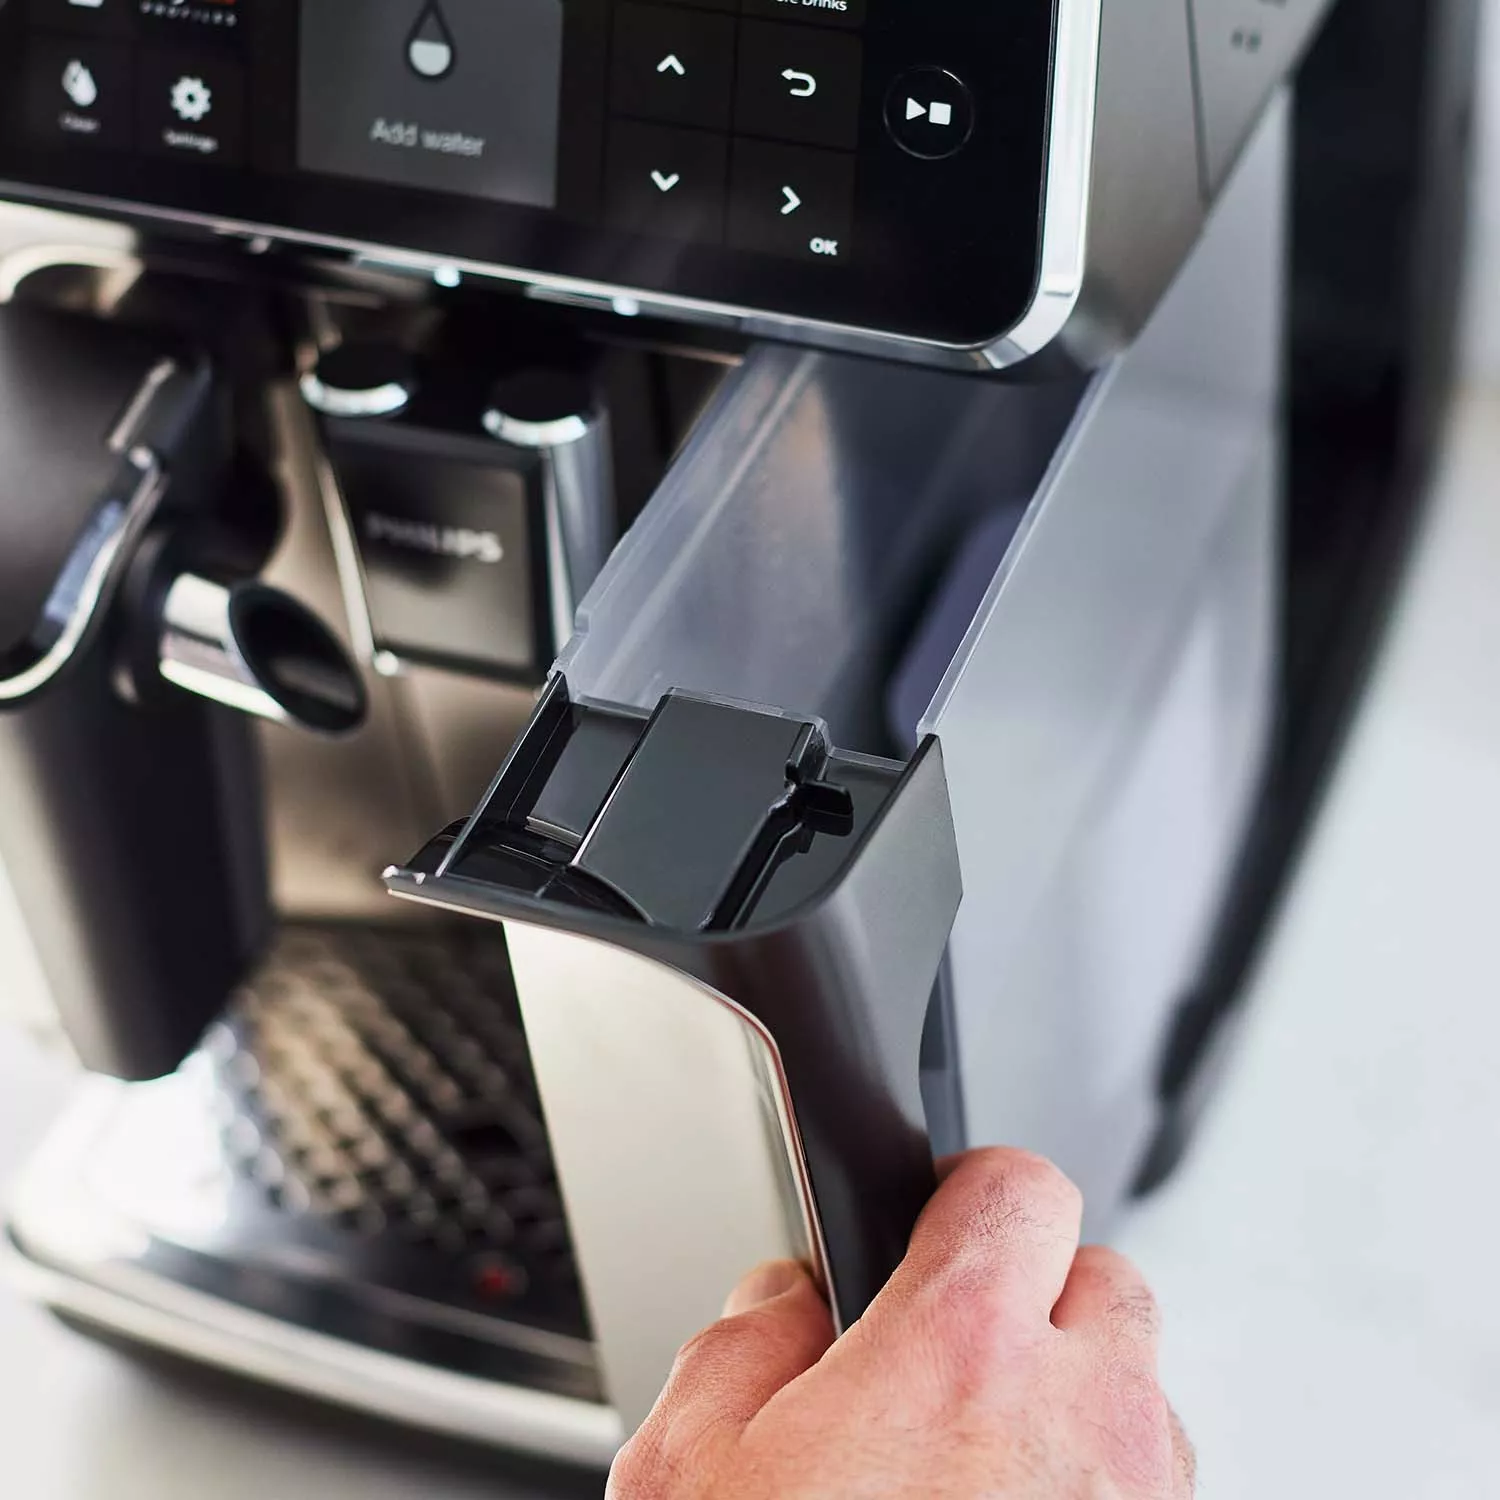 Philips 5400 Latte Go vs. 4300 Latte Go Super Automatic Espresso